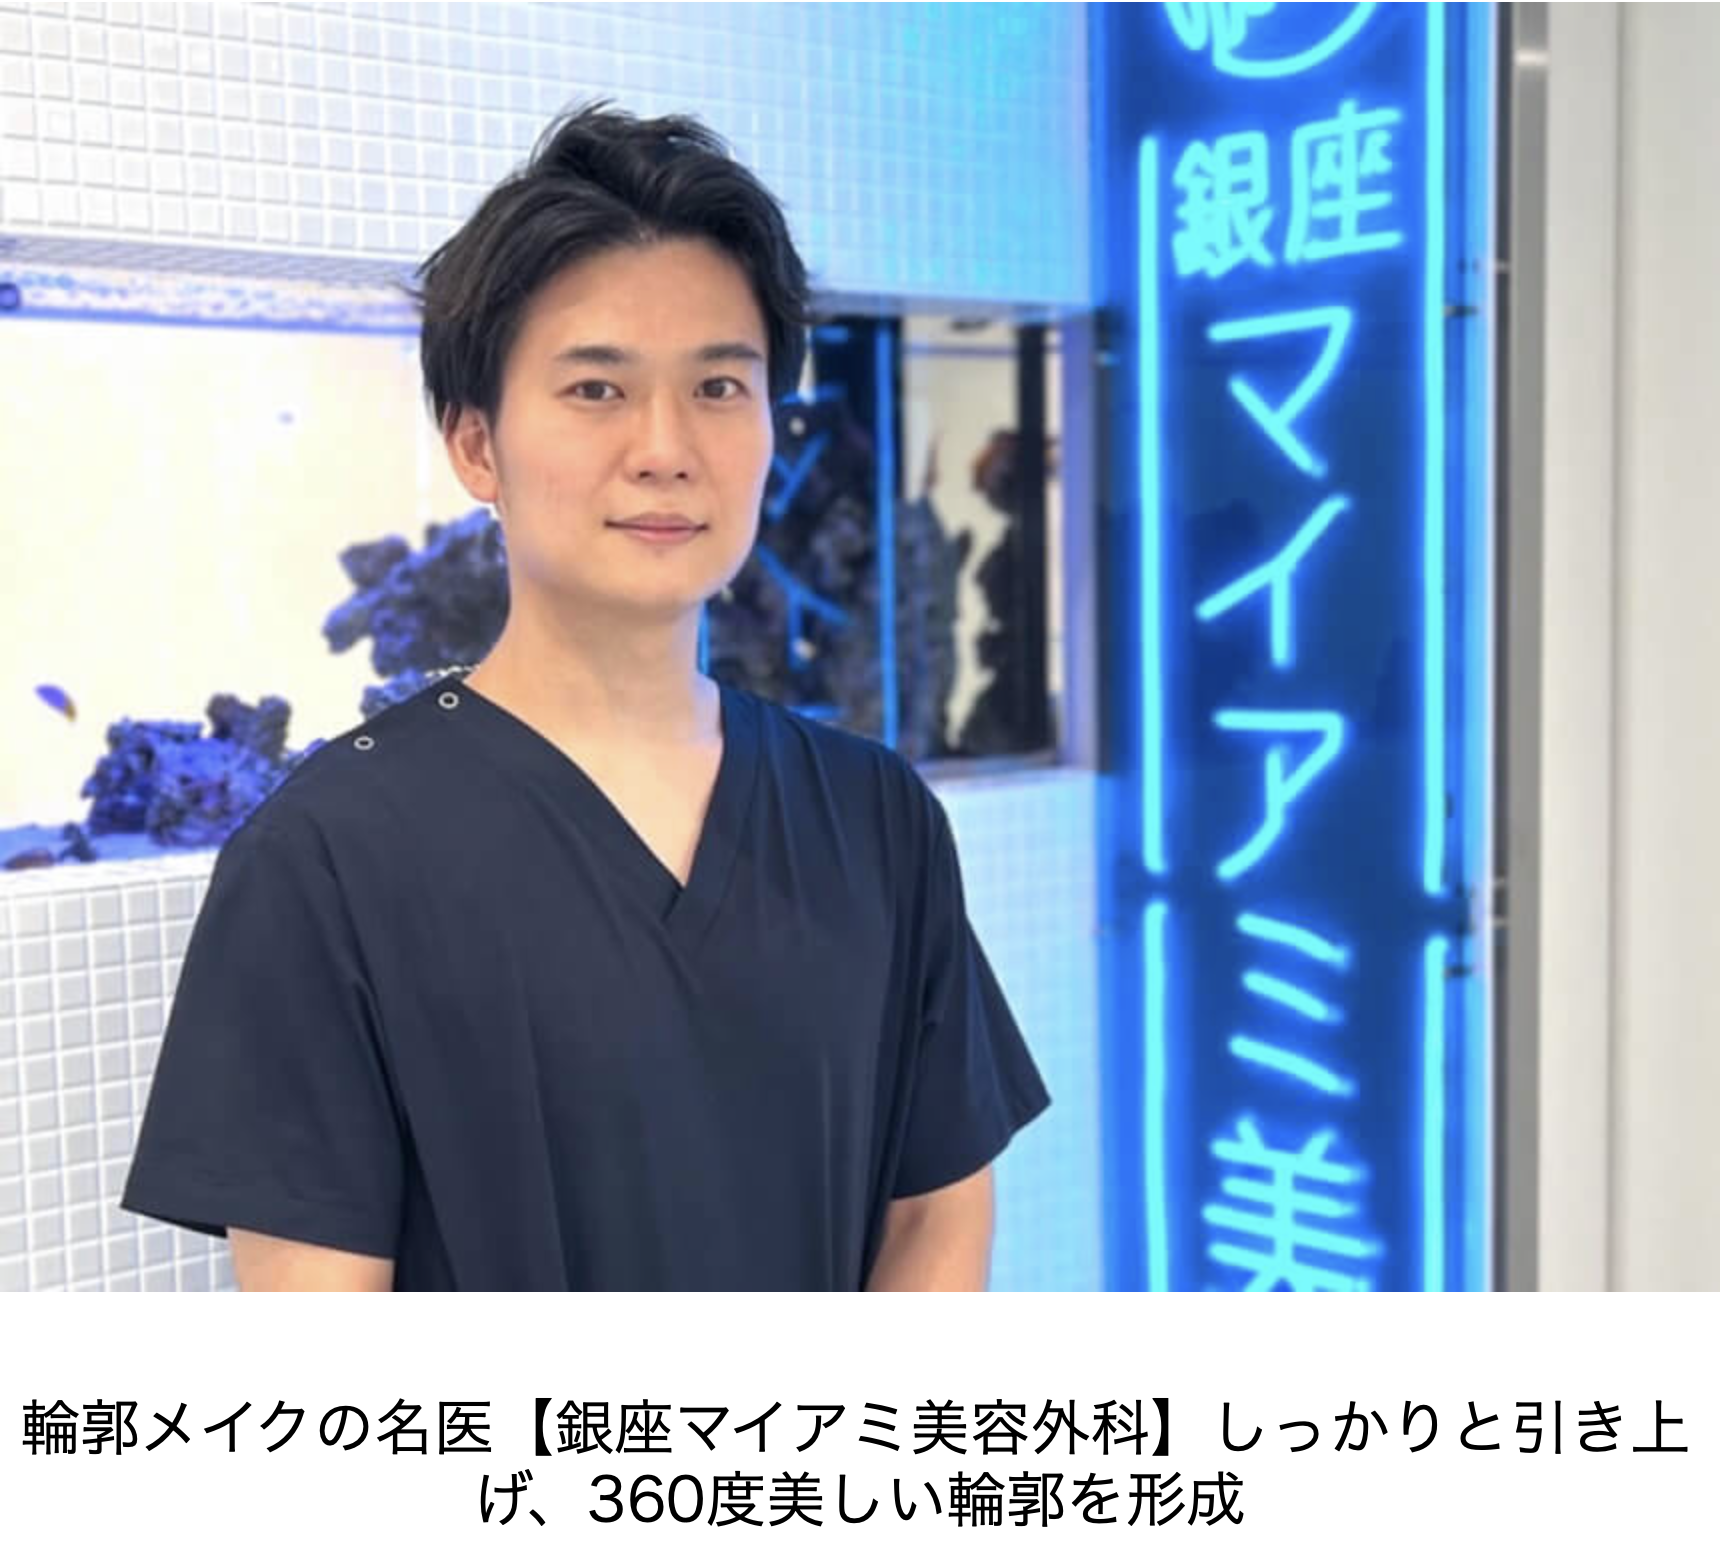 輪郭メイクの名医として当院の沖野医師が紹介されました。